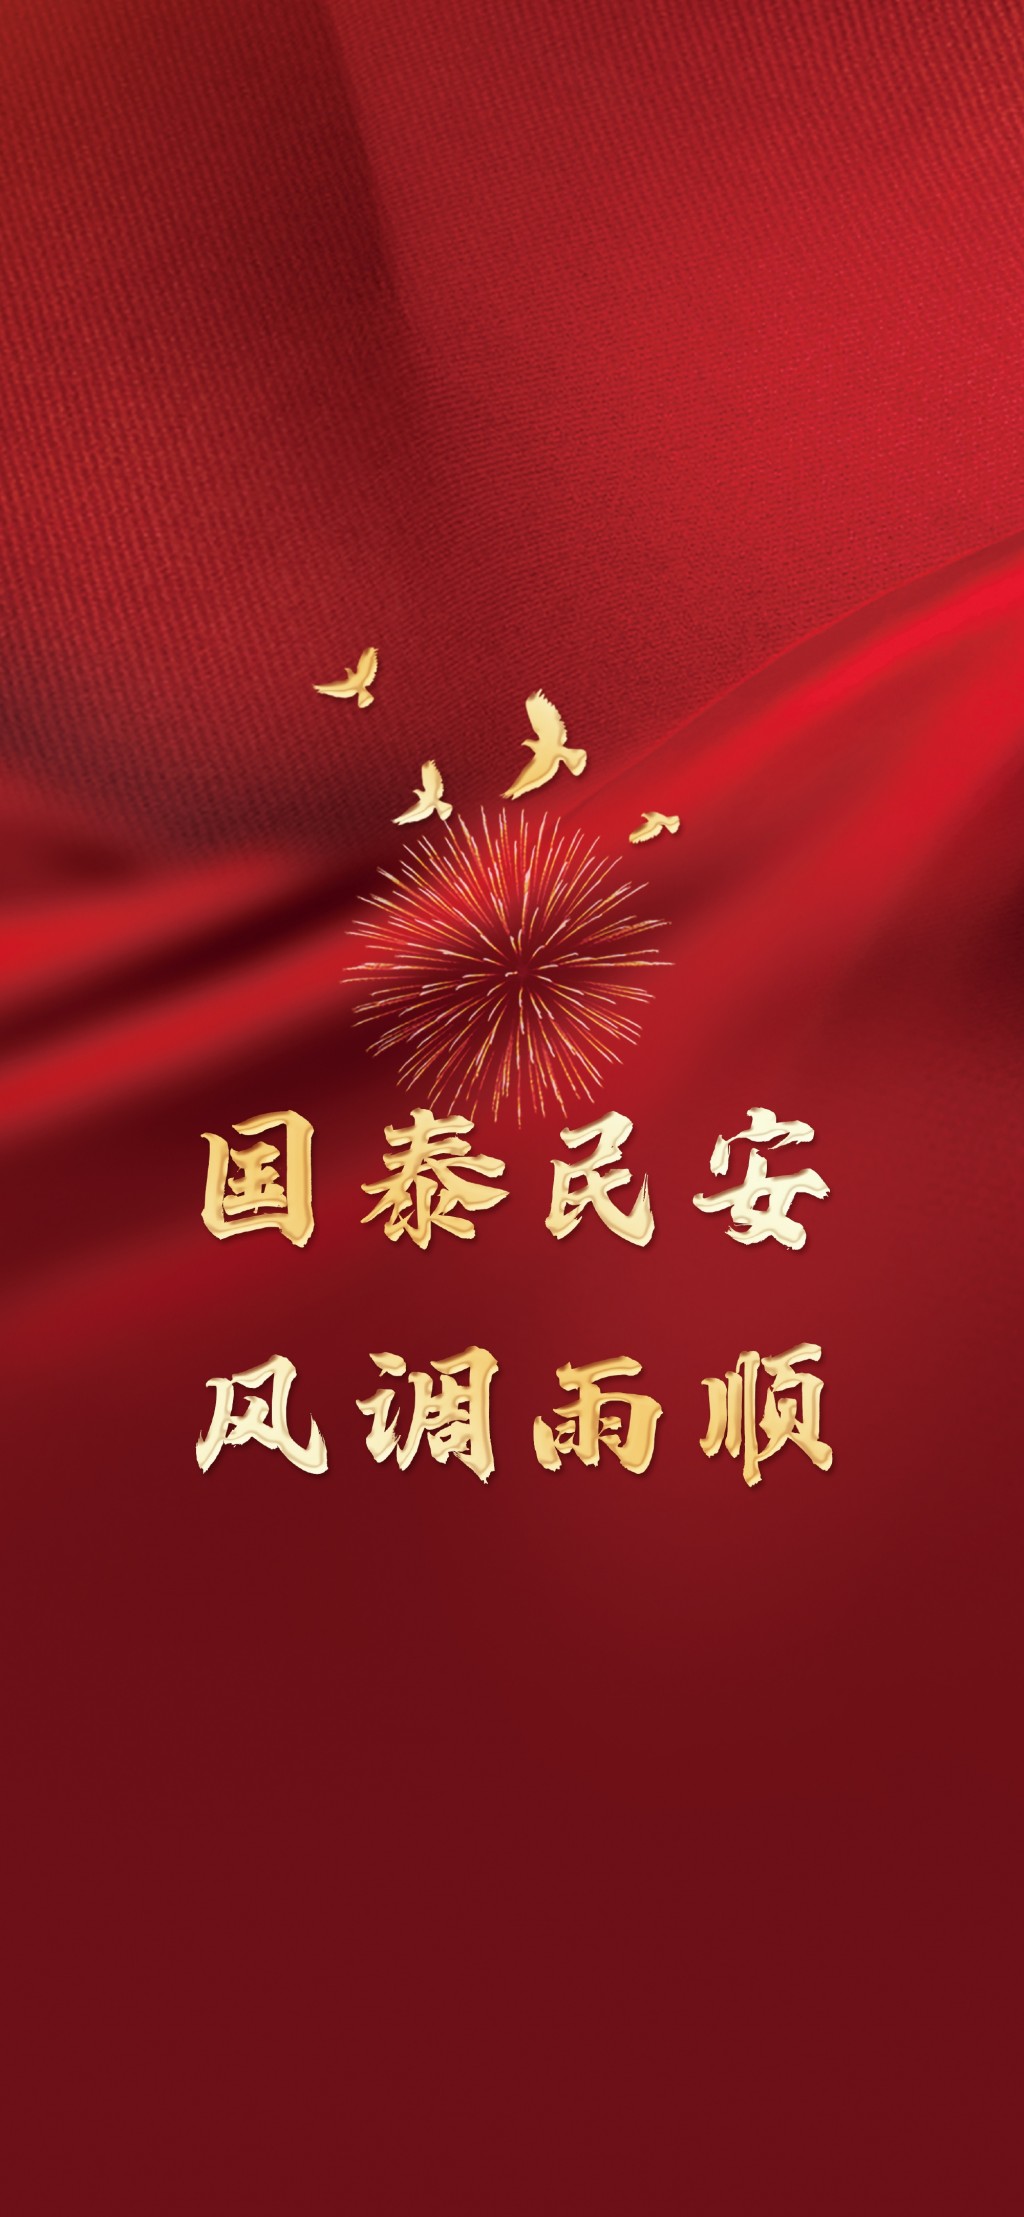 国庆节祝福祖国文字手机壁纸